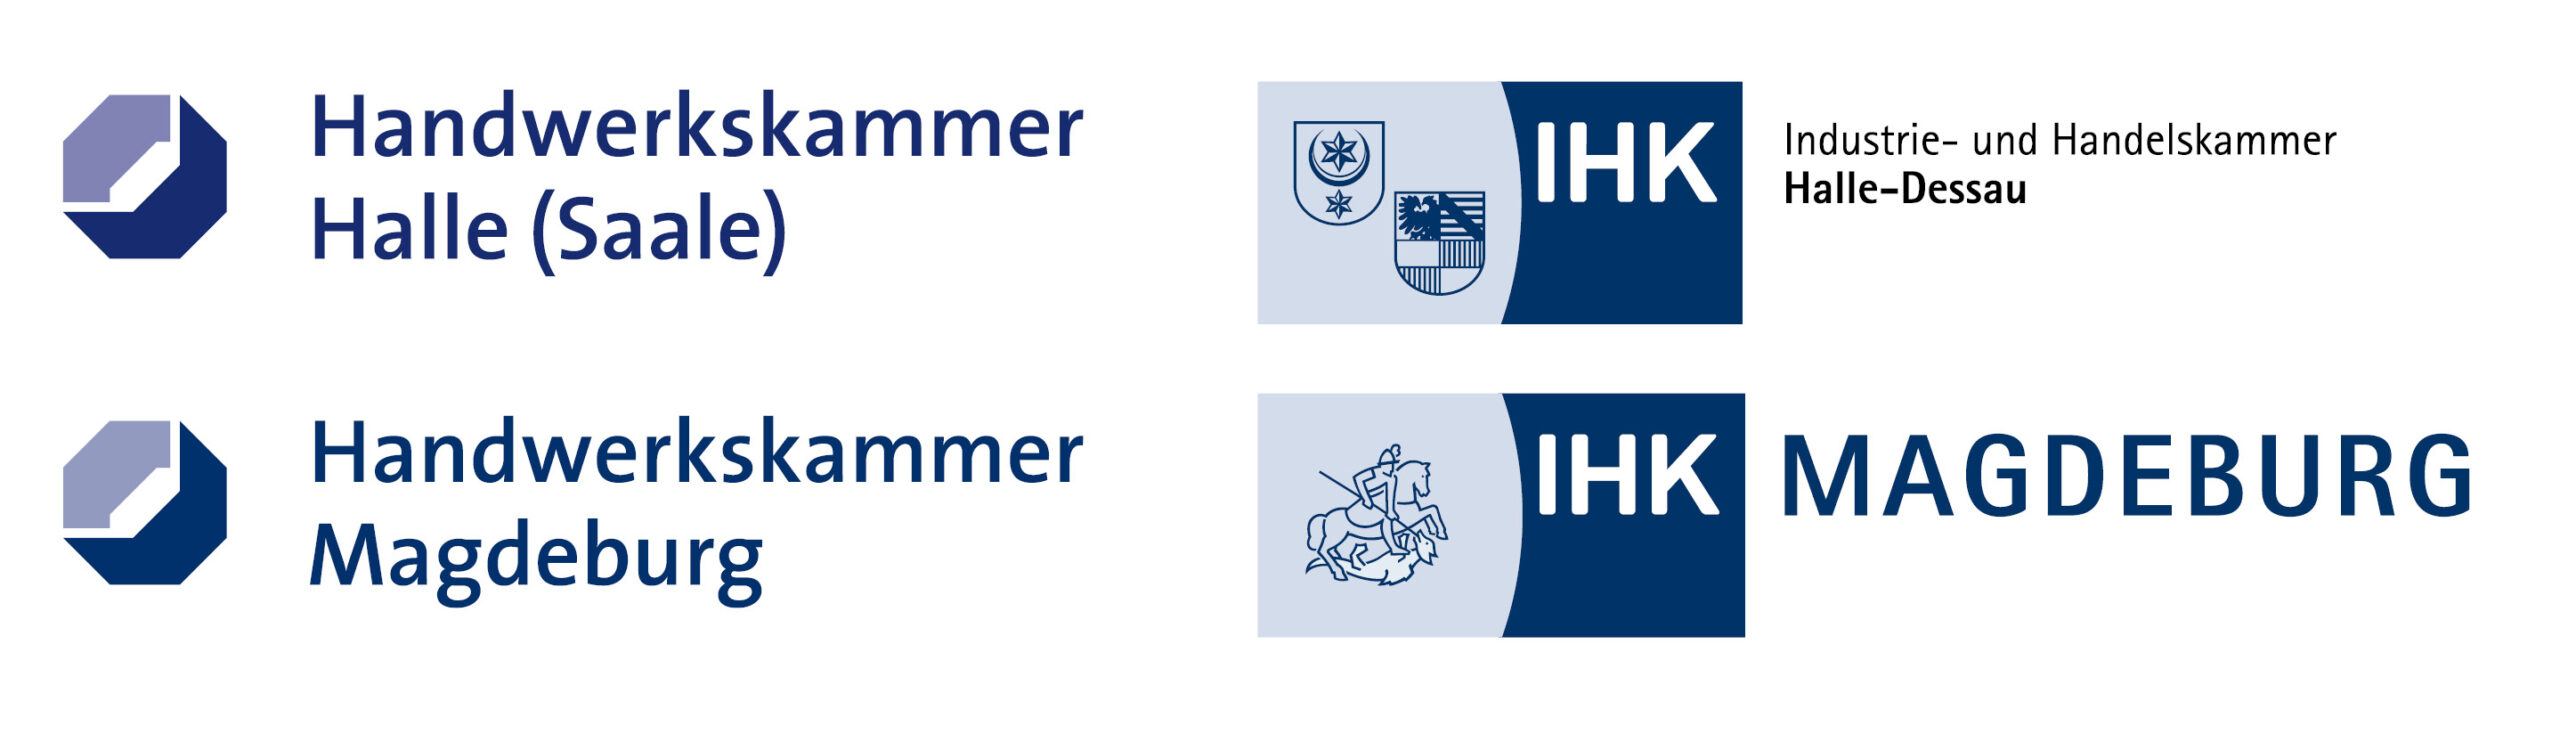 Gewerbliche Kammern Logoleiste